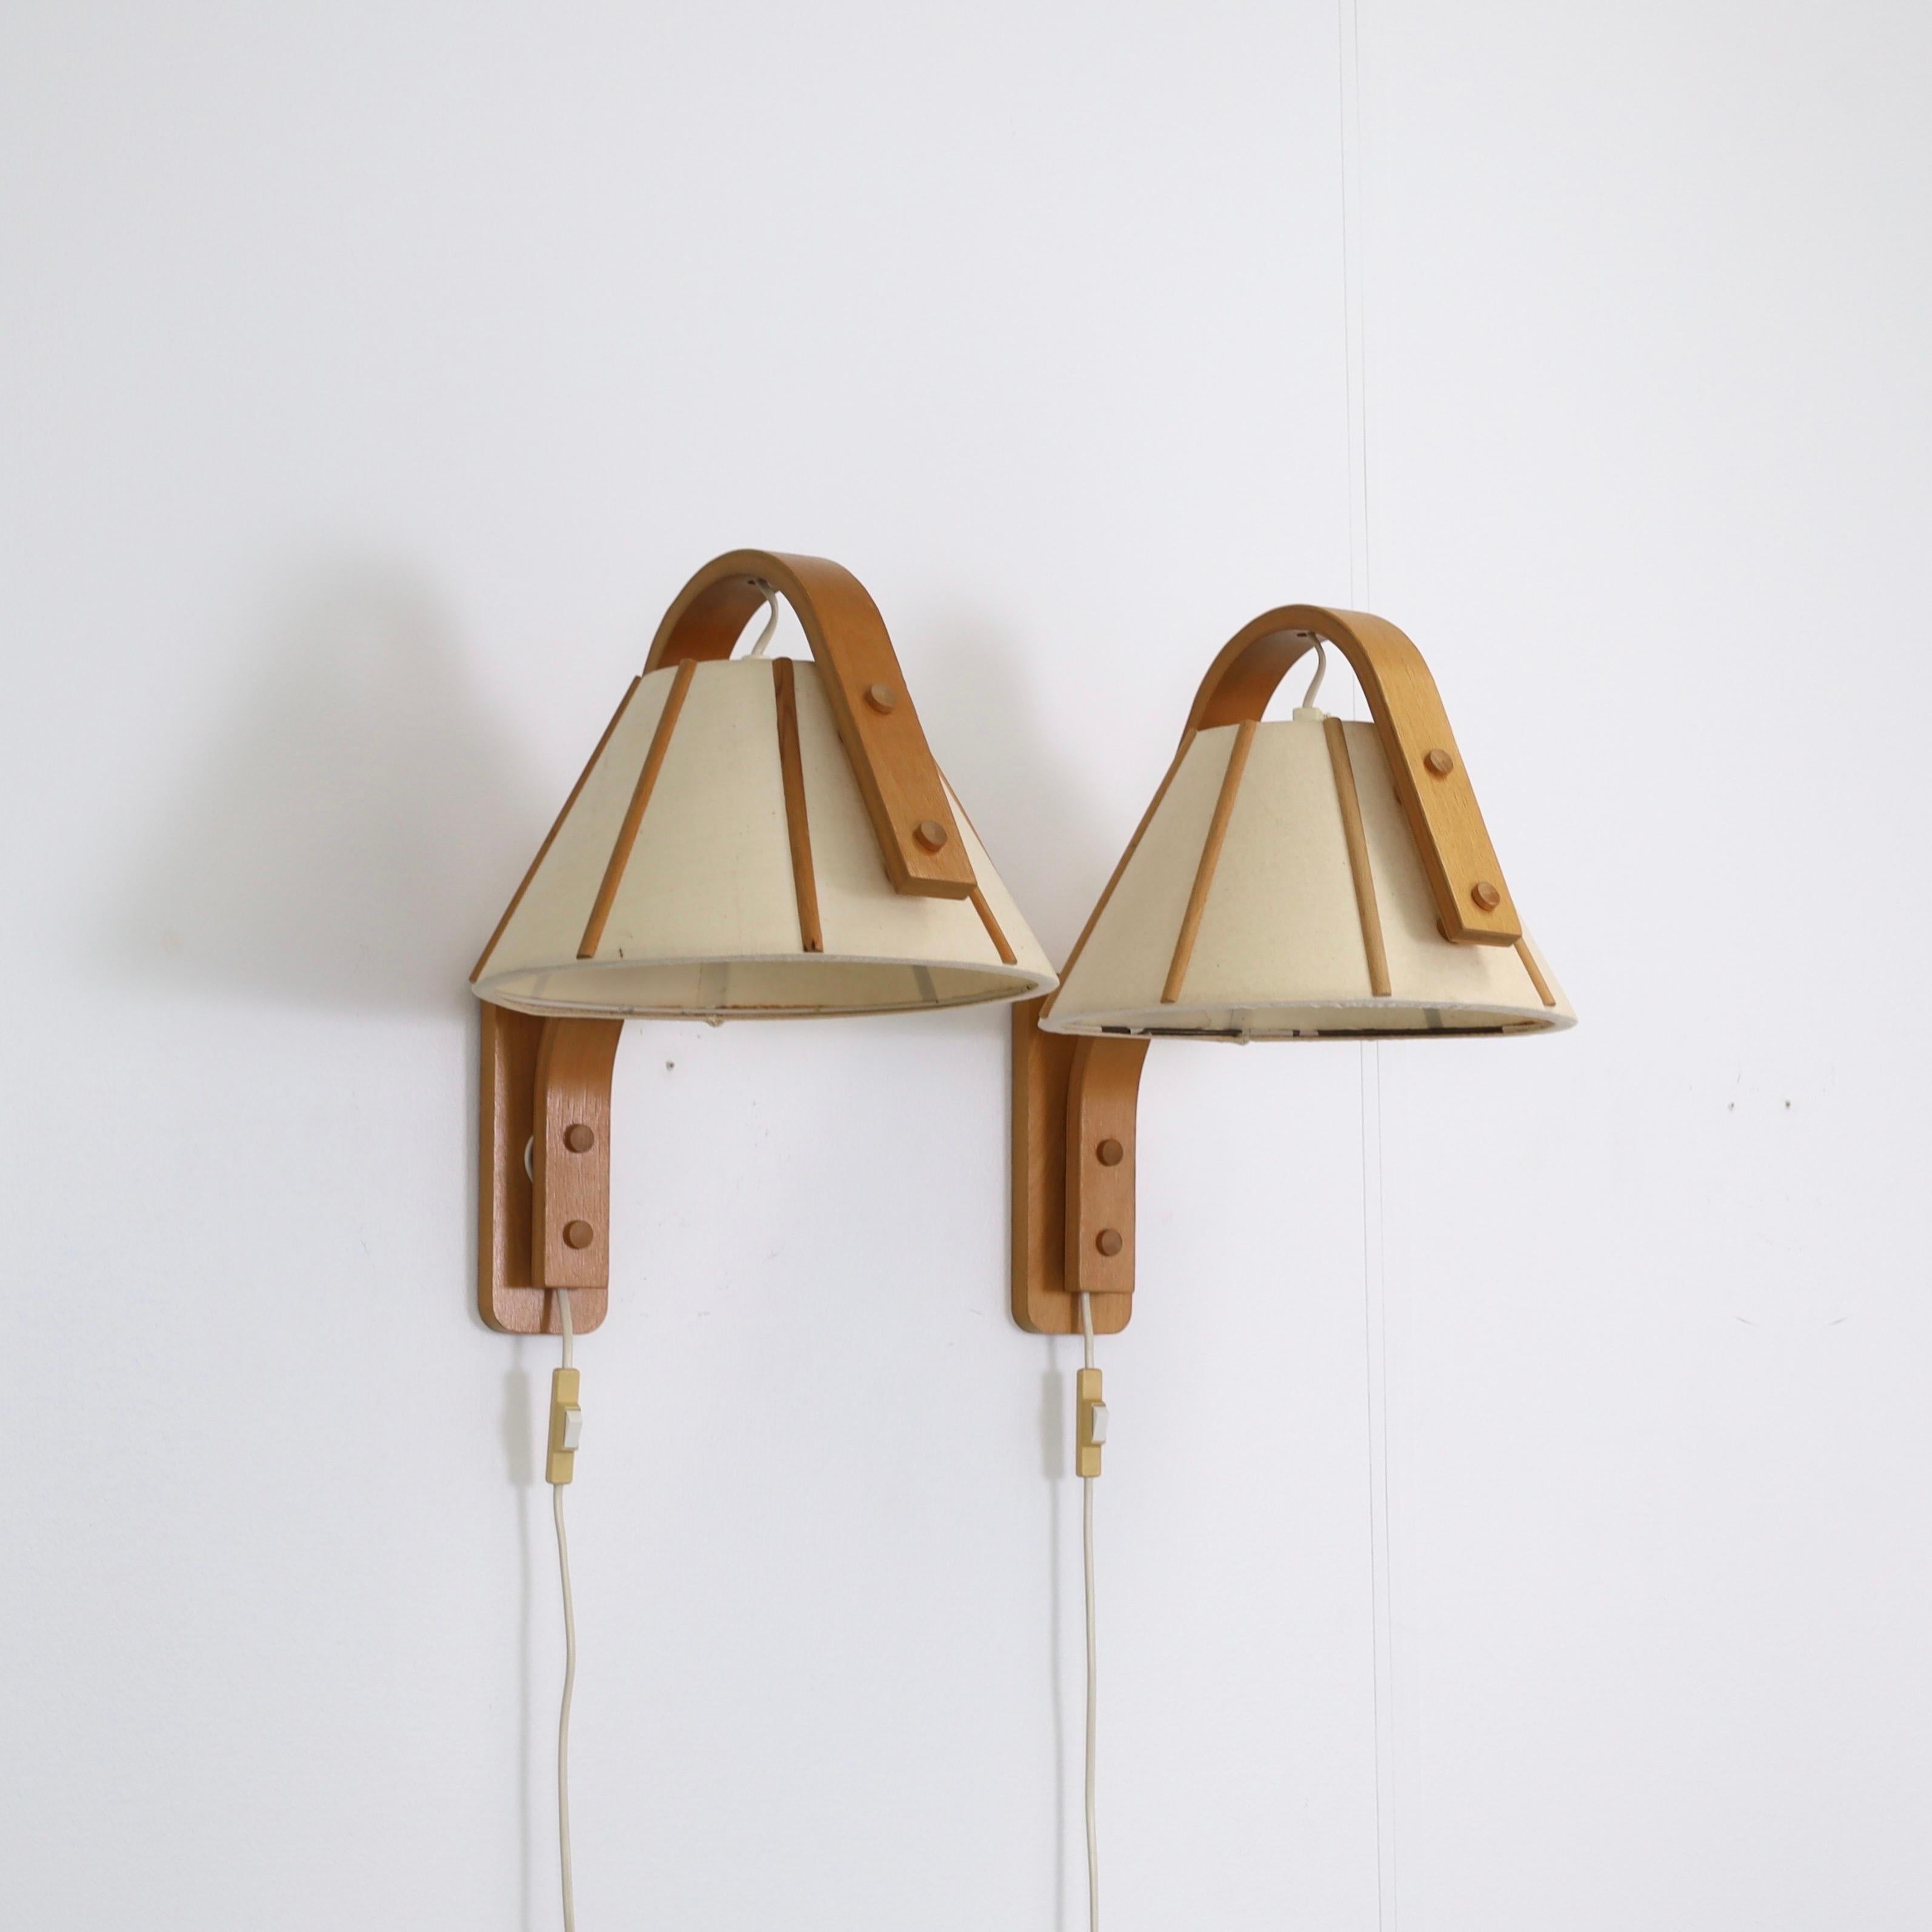 Set of 4 Scandinavian Modern Beech wood wall lamps by Jan Wickelgren, 1970s For Sale 1